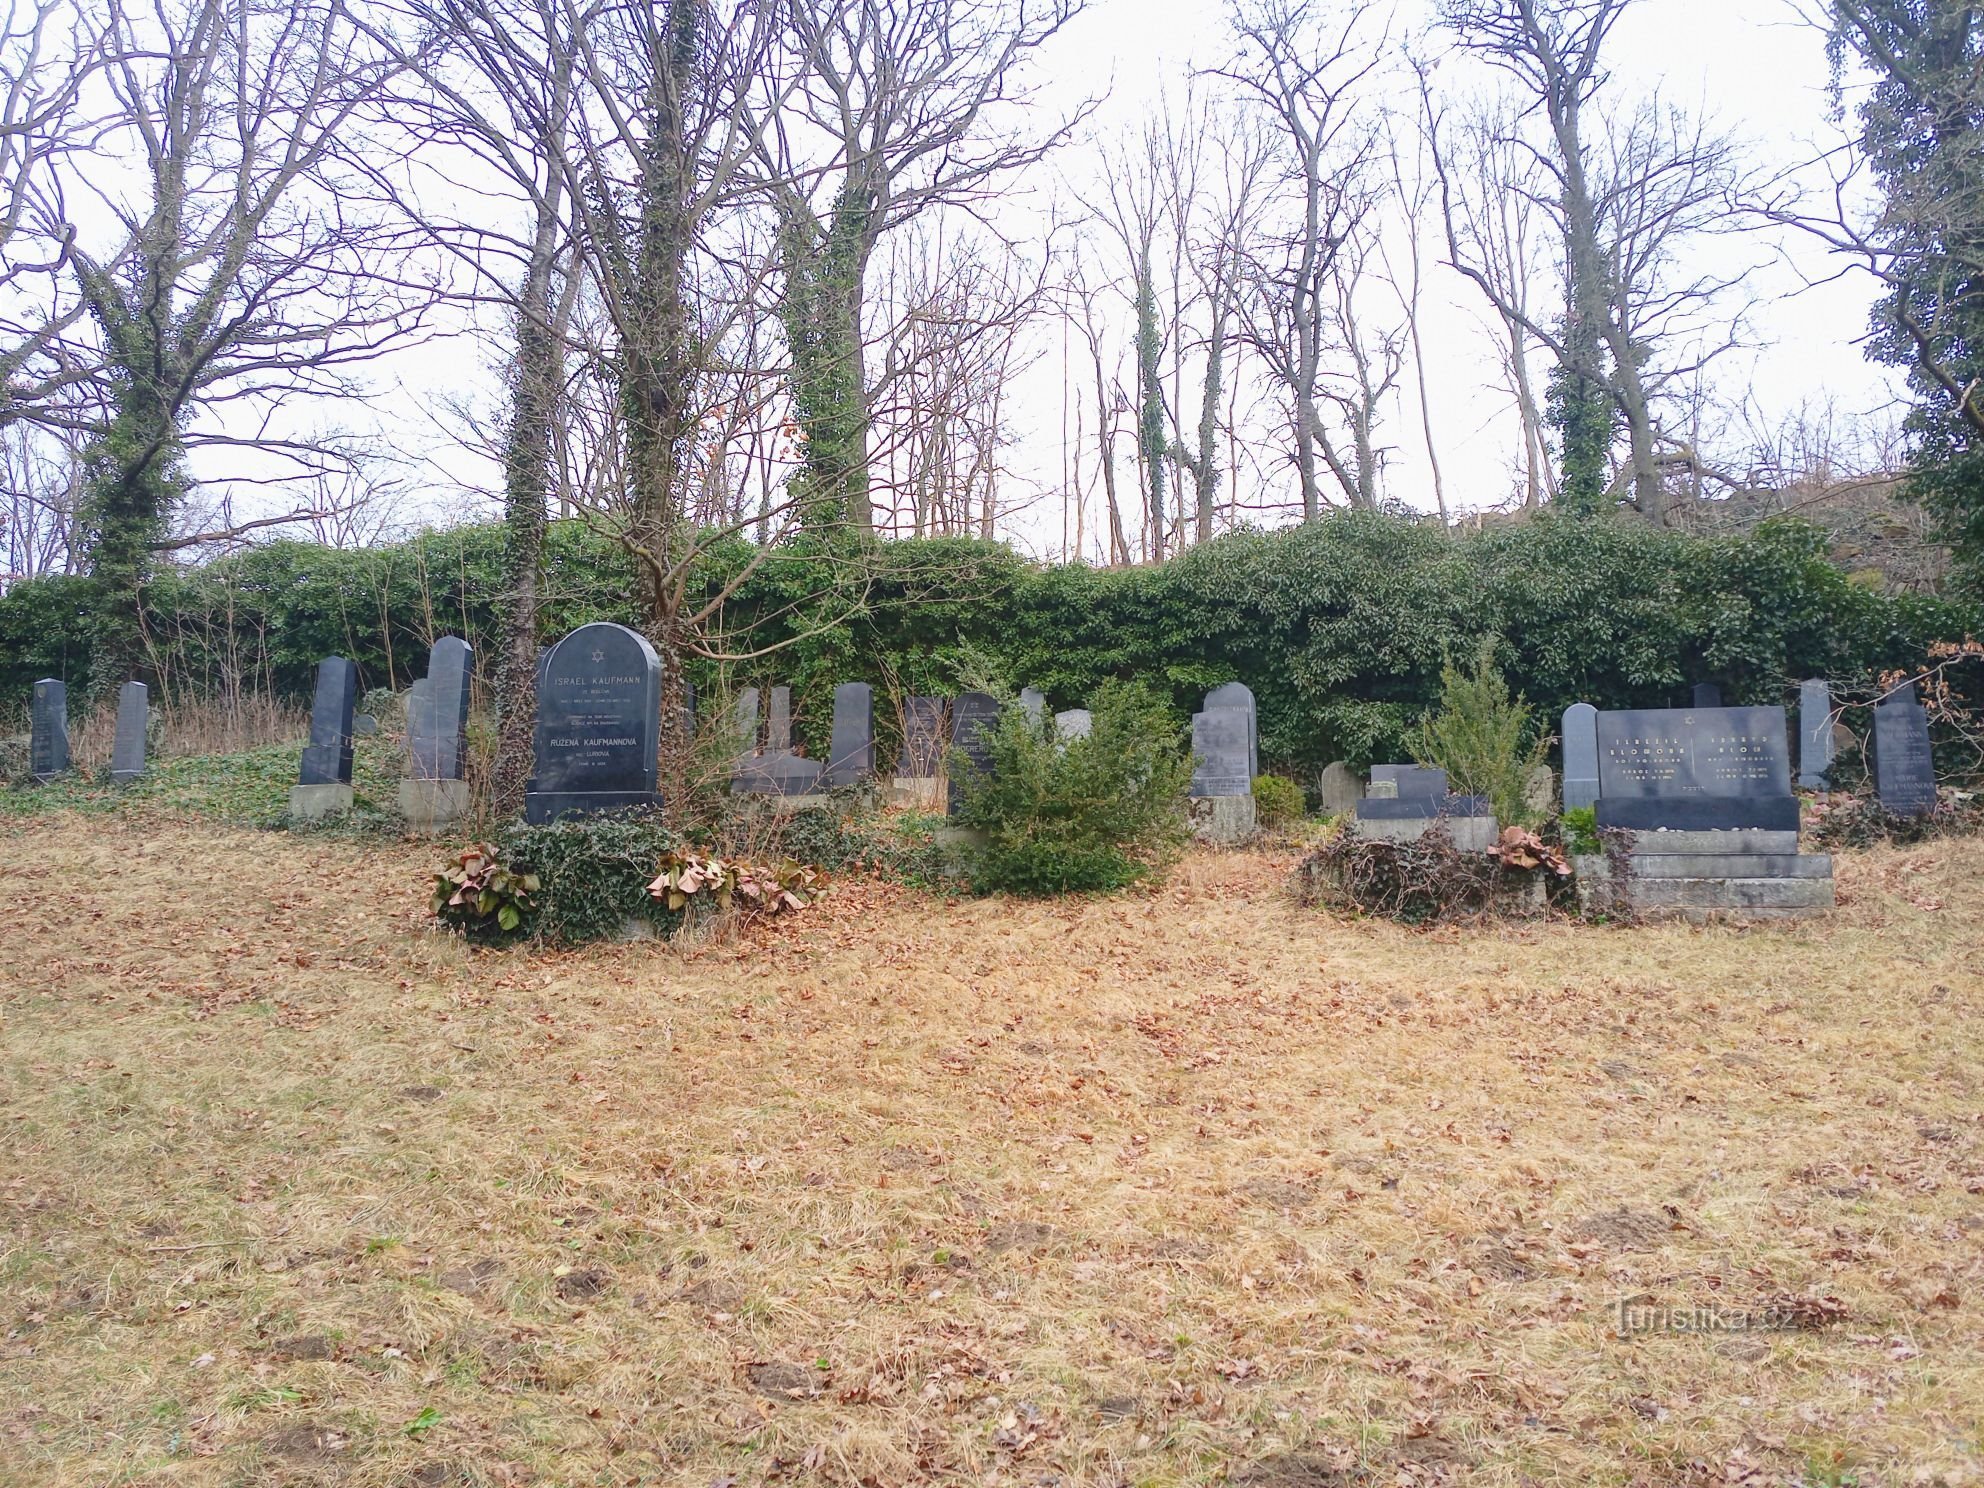 3. Vue d'une partie du cimetière